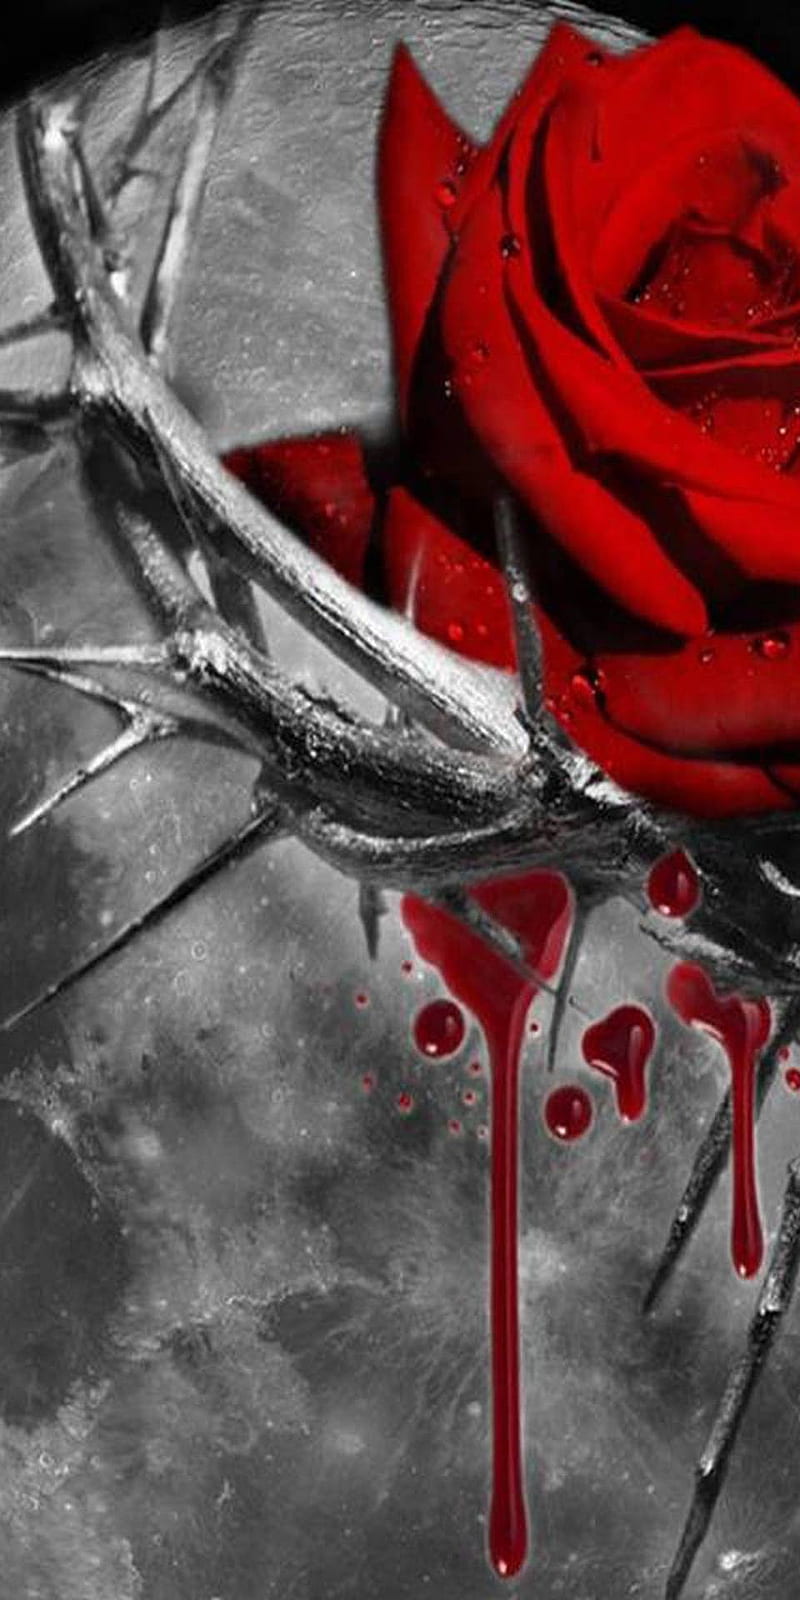 HD bleeding roses wallpapers | Peakpx